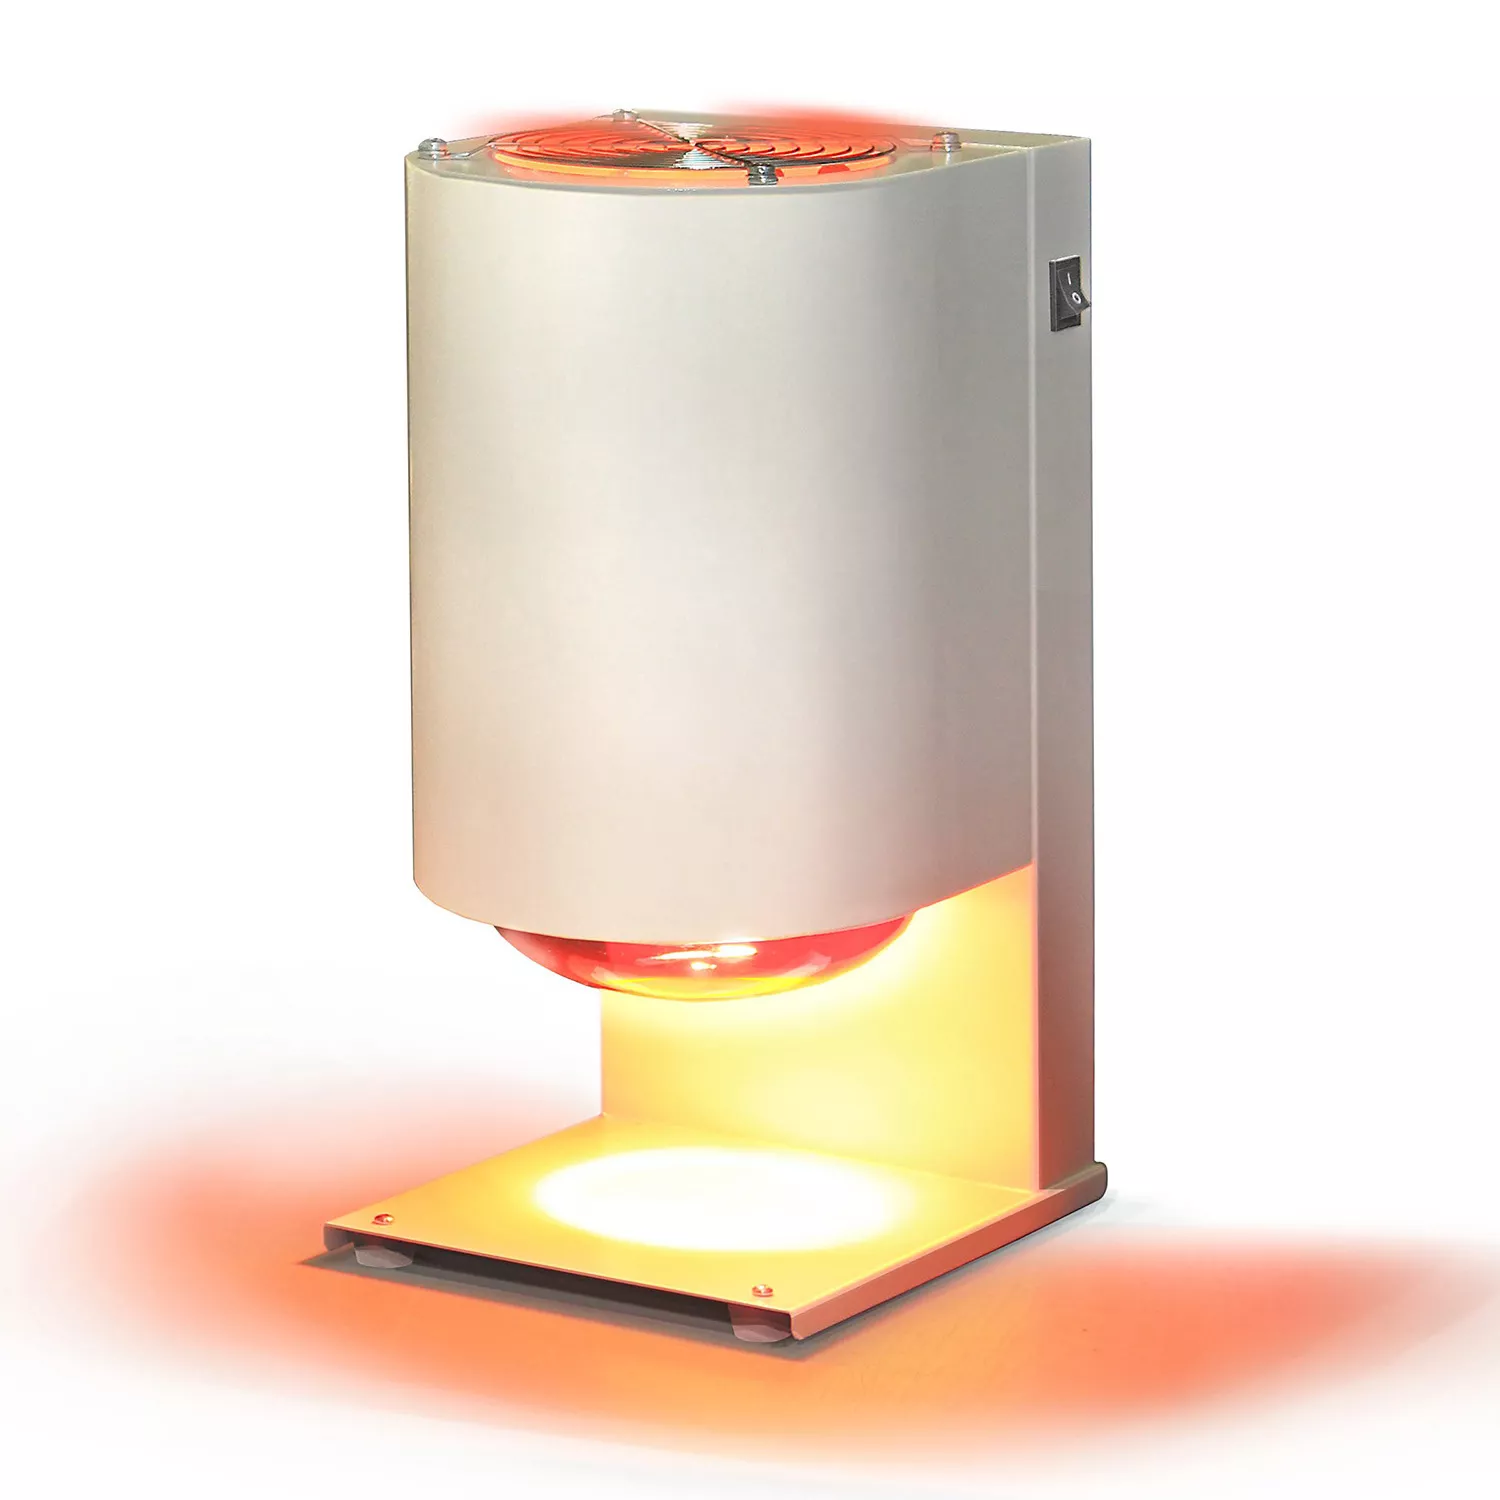 ЛАМПА 1.0 ЦИРКОН - инфракрасная лампа для предварительной сушки окрашенных изделий из оксида циркония